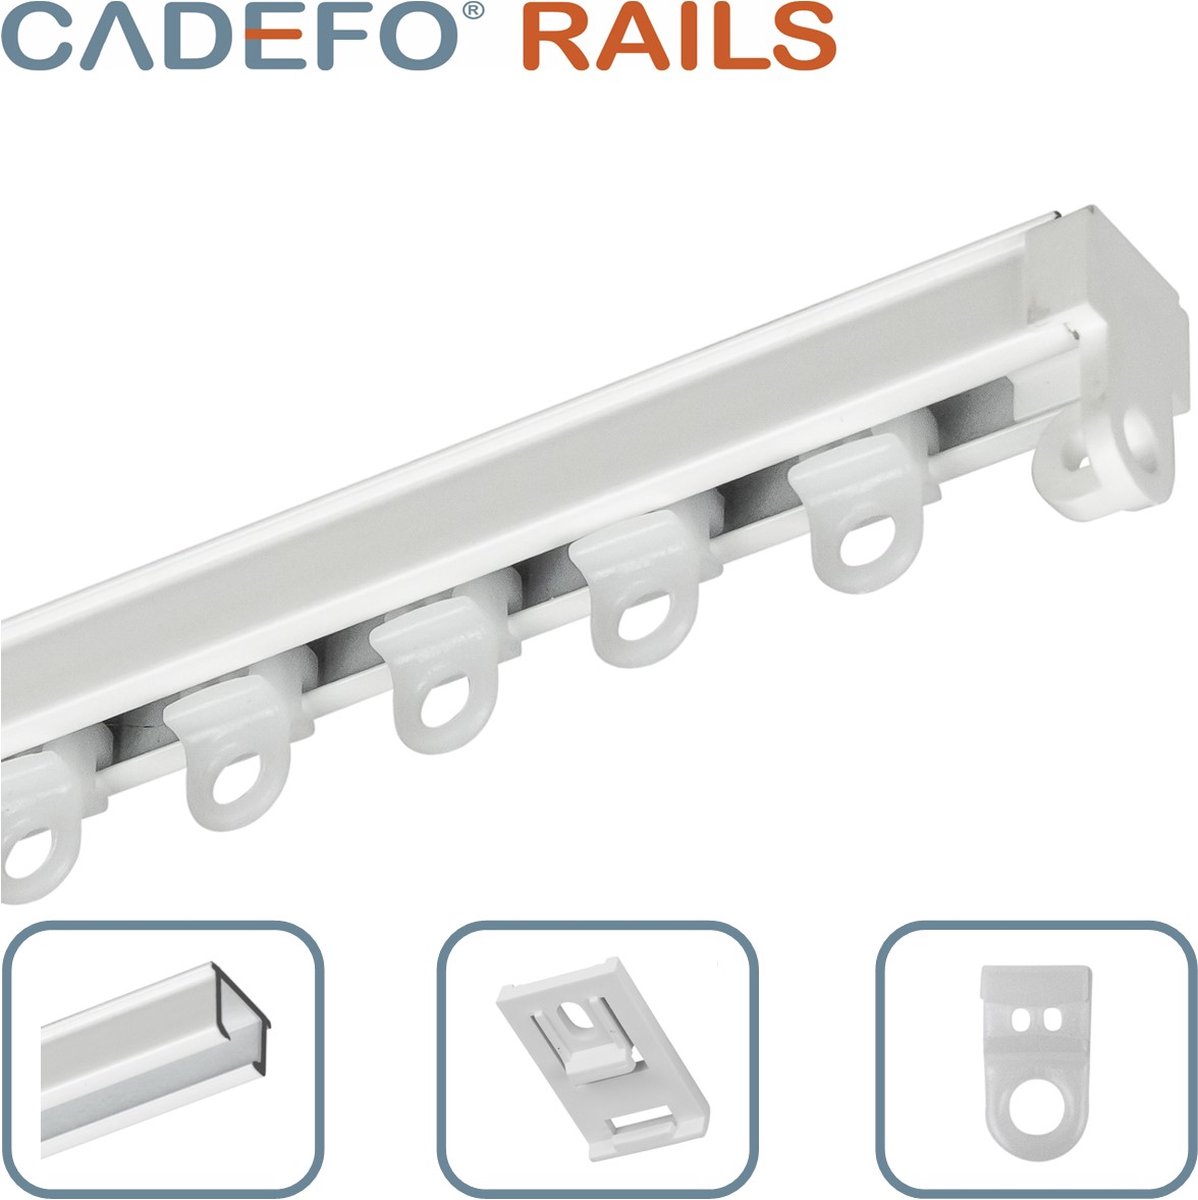 CADEFO RAILS (251 - 300 cm) Gordijnrails - Compleet op maat! - UIT 1 STUK - Leverbaar tot 6 meter - Plafondbevestiging - Lengte 279 cm